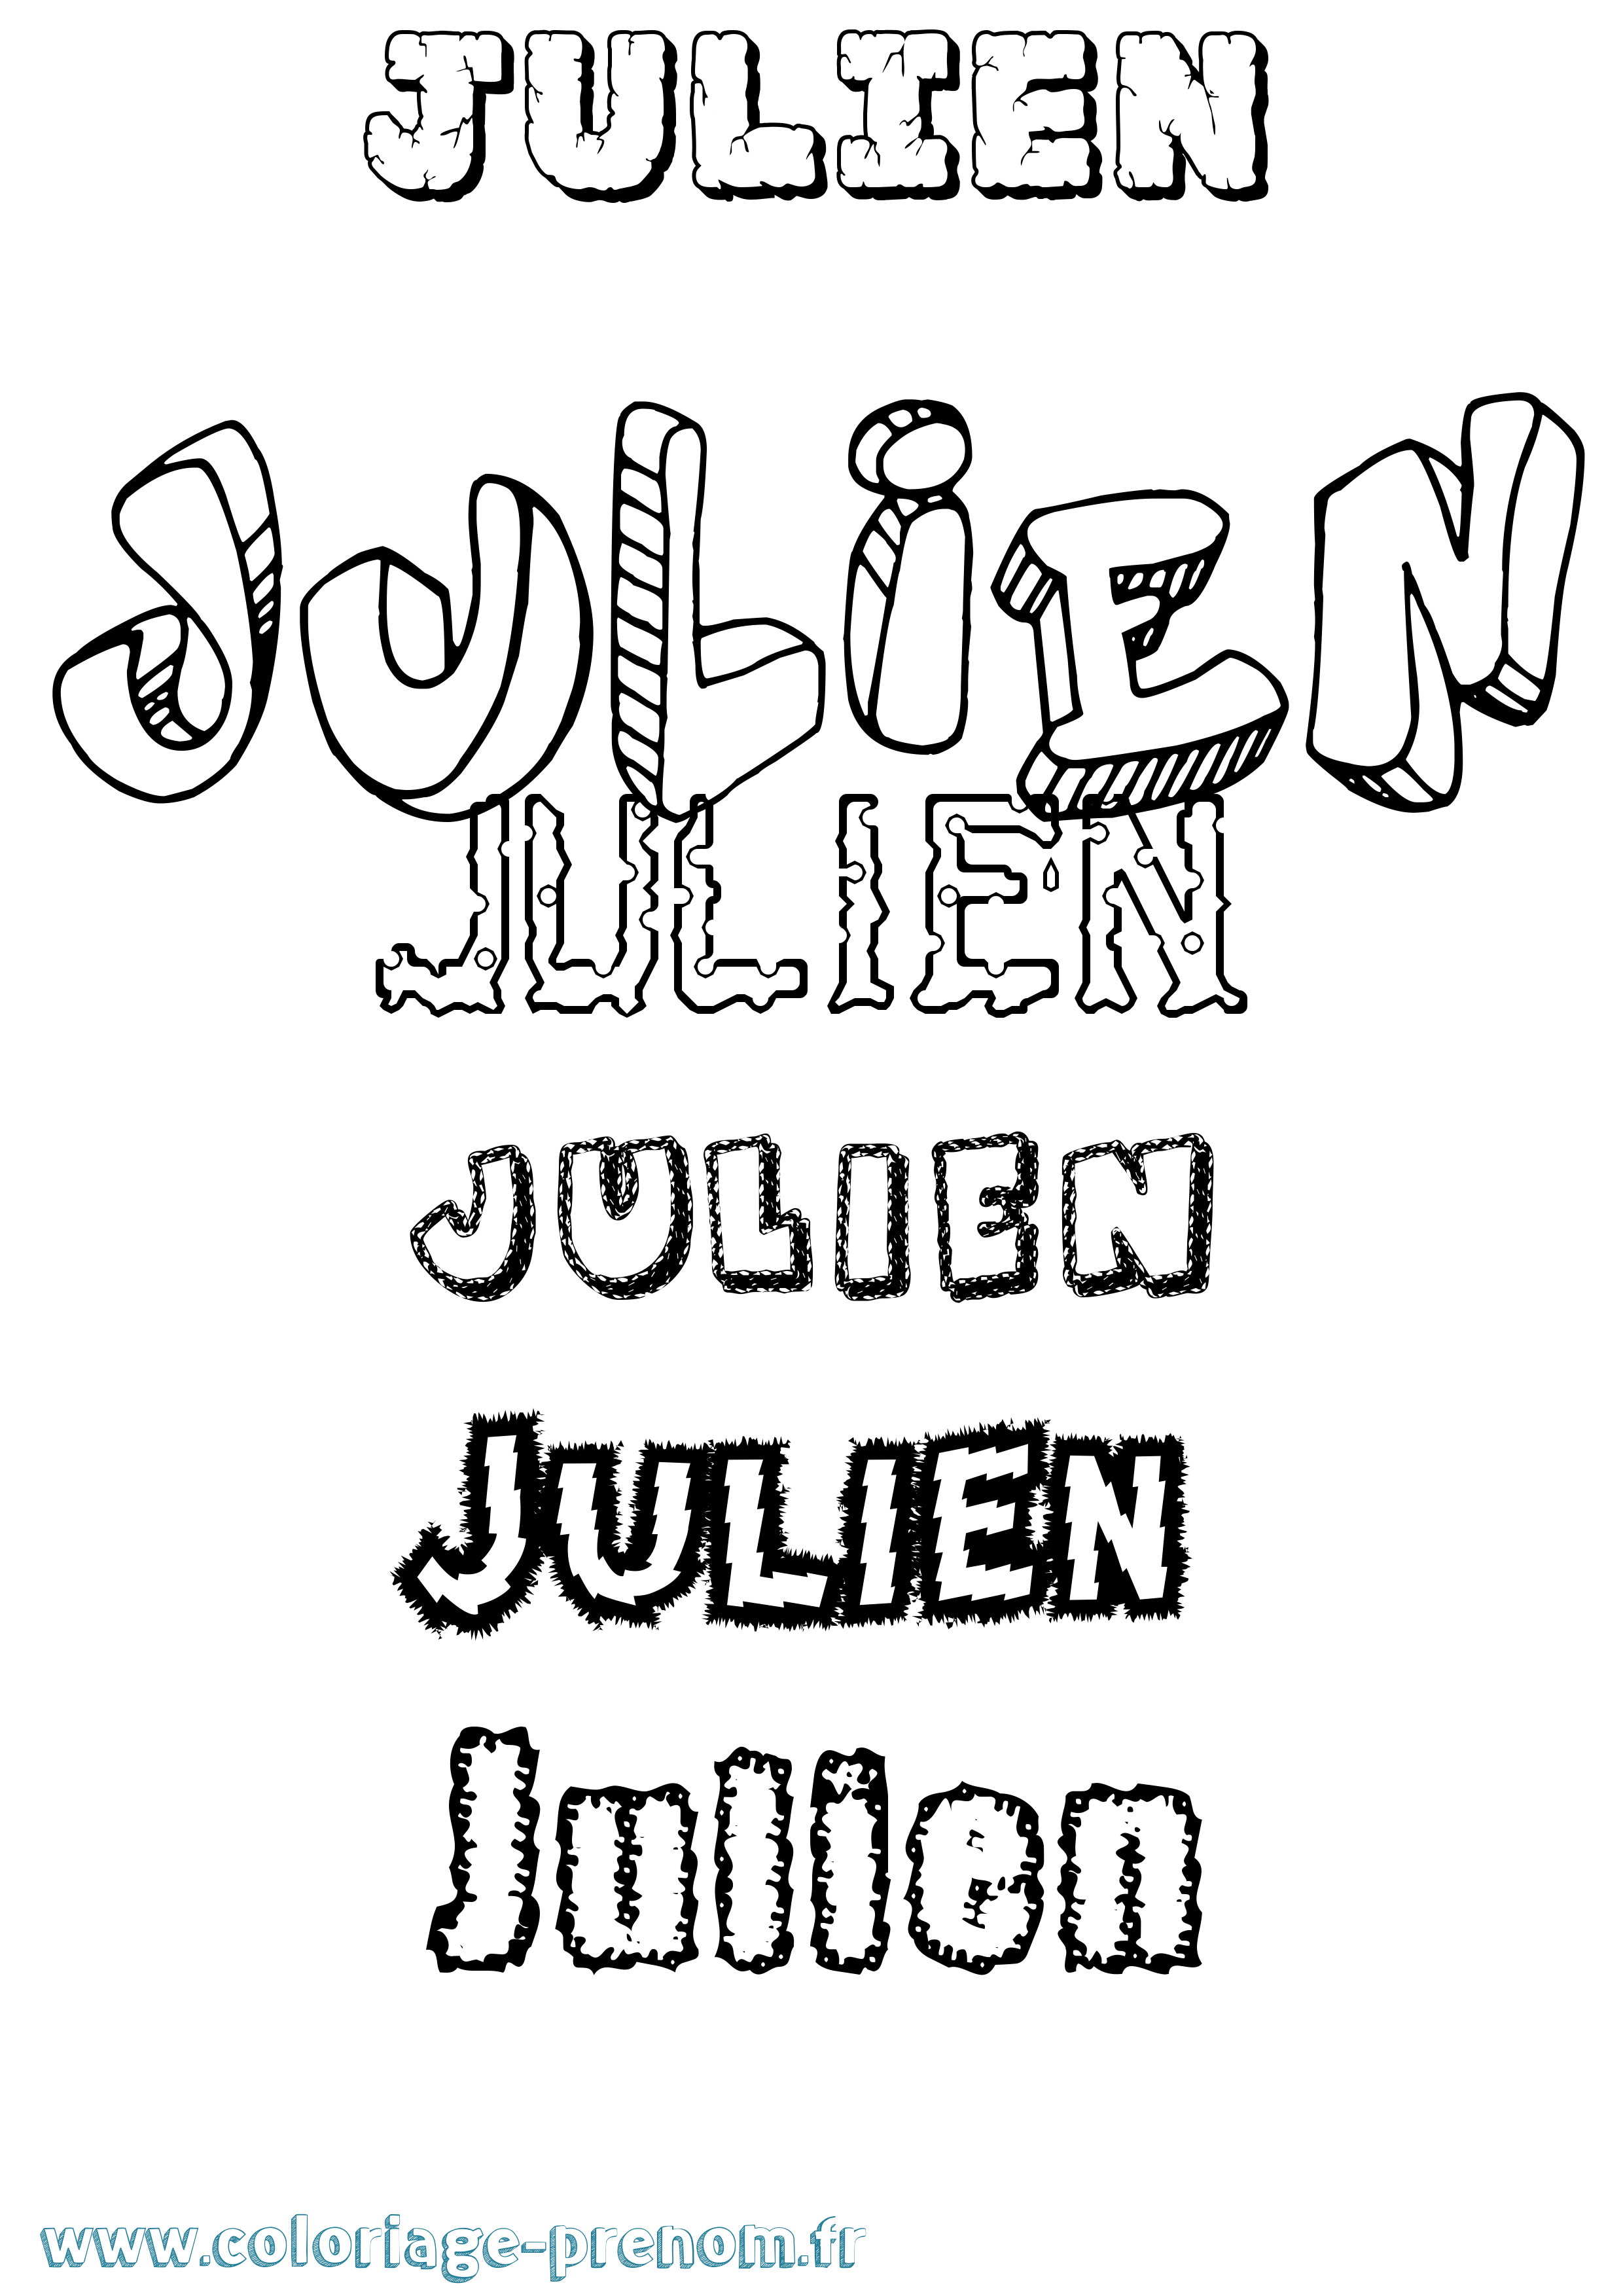 Coloriage prénom Julien